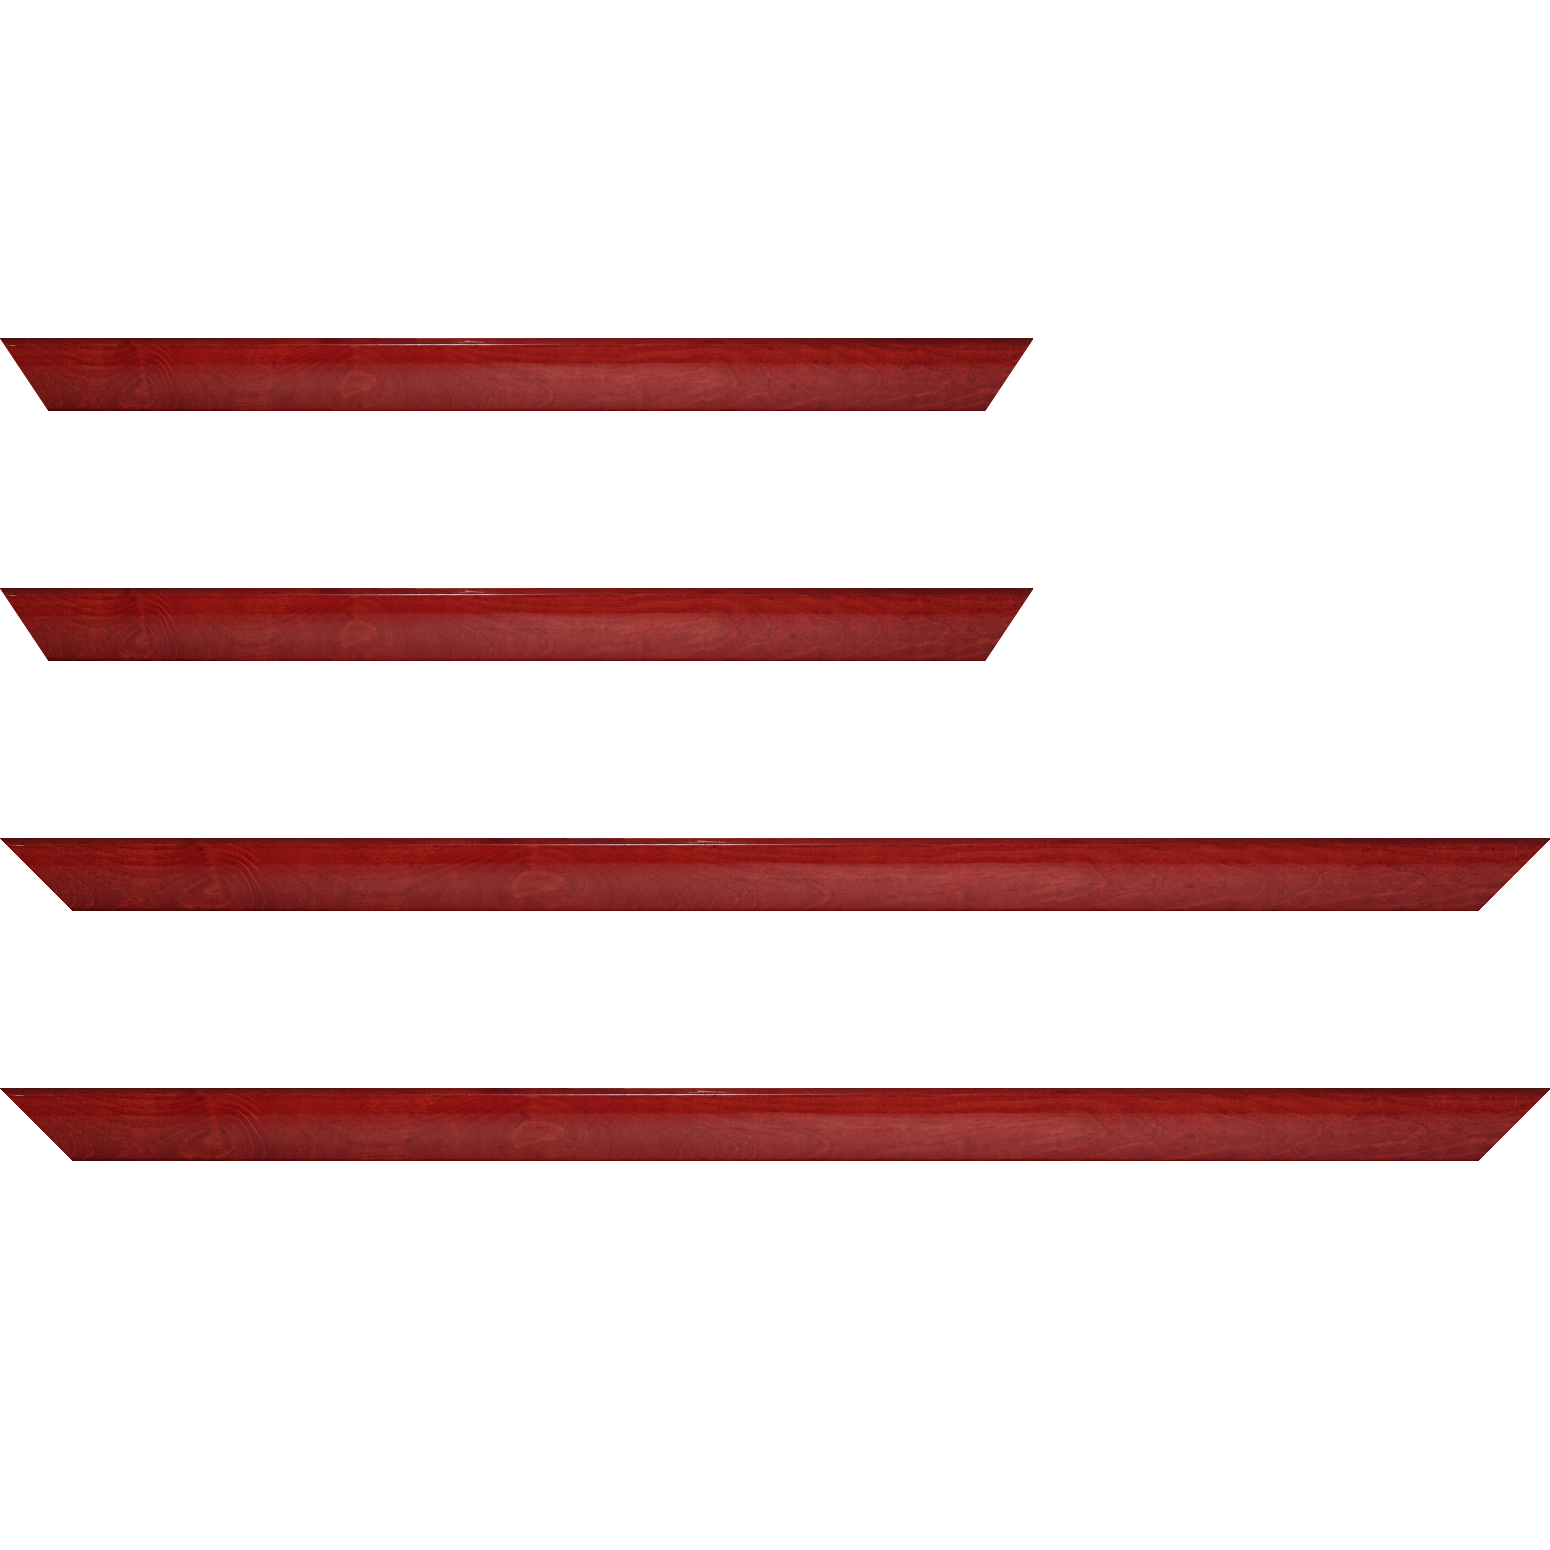 Baguette bois profil arrondi en pente plongeant largeur 2.4cm couleur rouge cerise finition vernis brillant,veine du bois  apparent (pin) , - 61x46